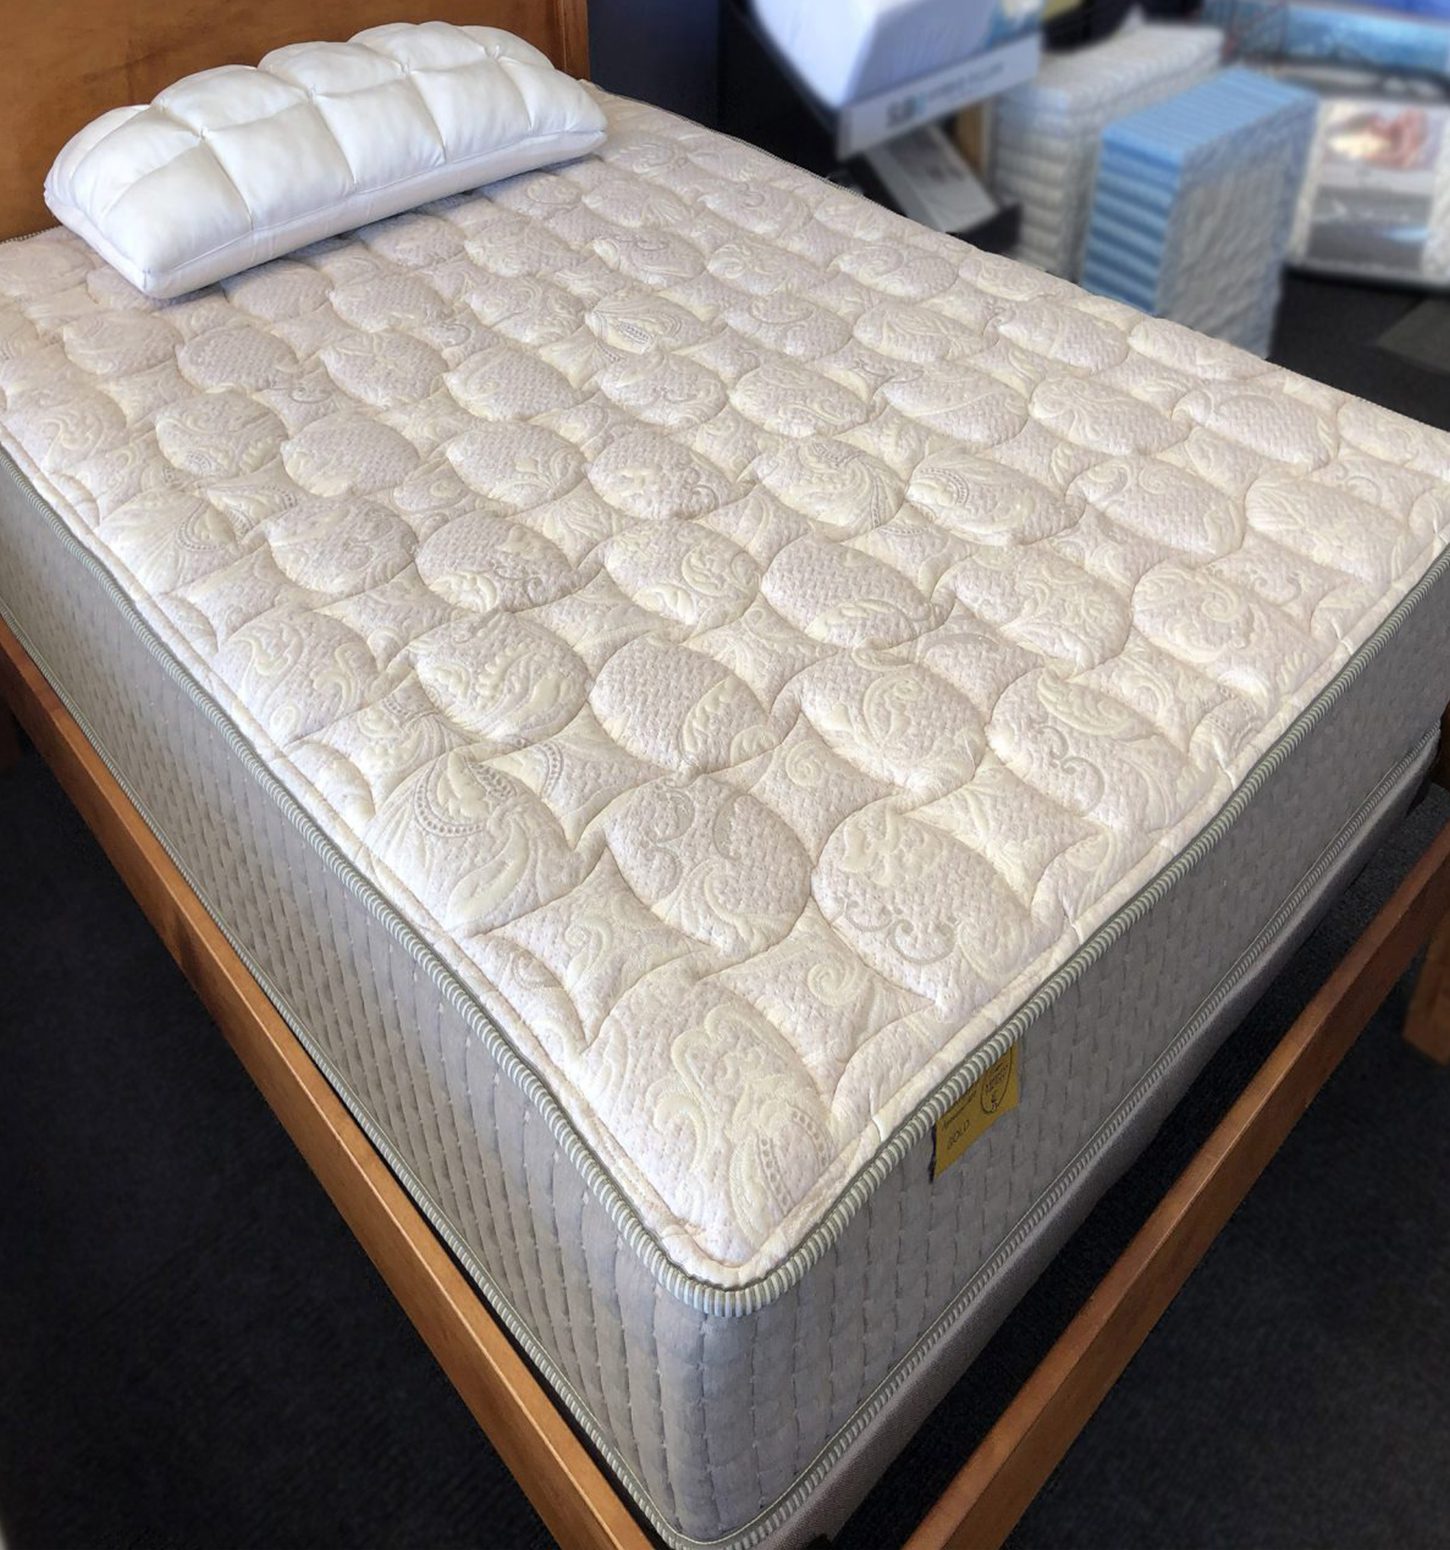 mattress from Yankee Mattress Factory